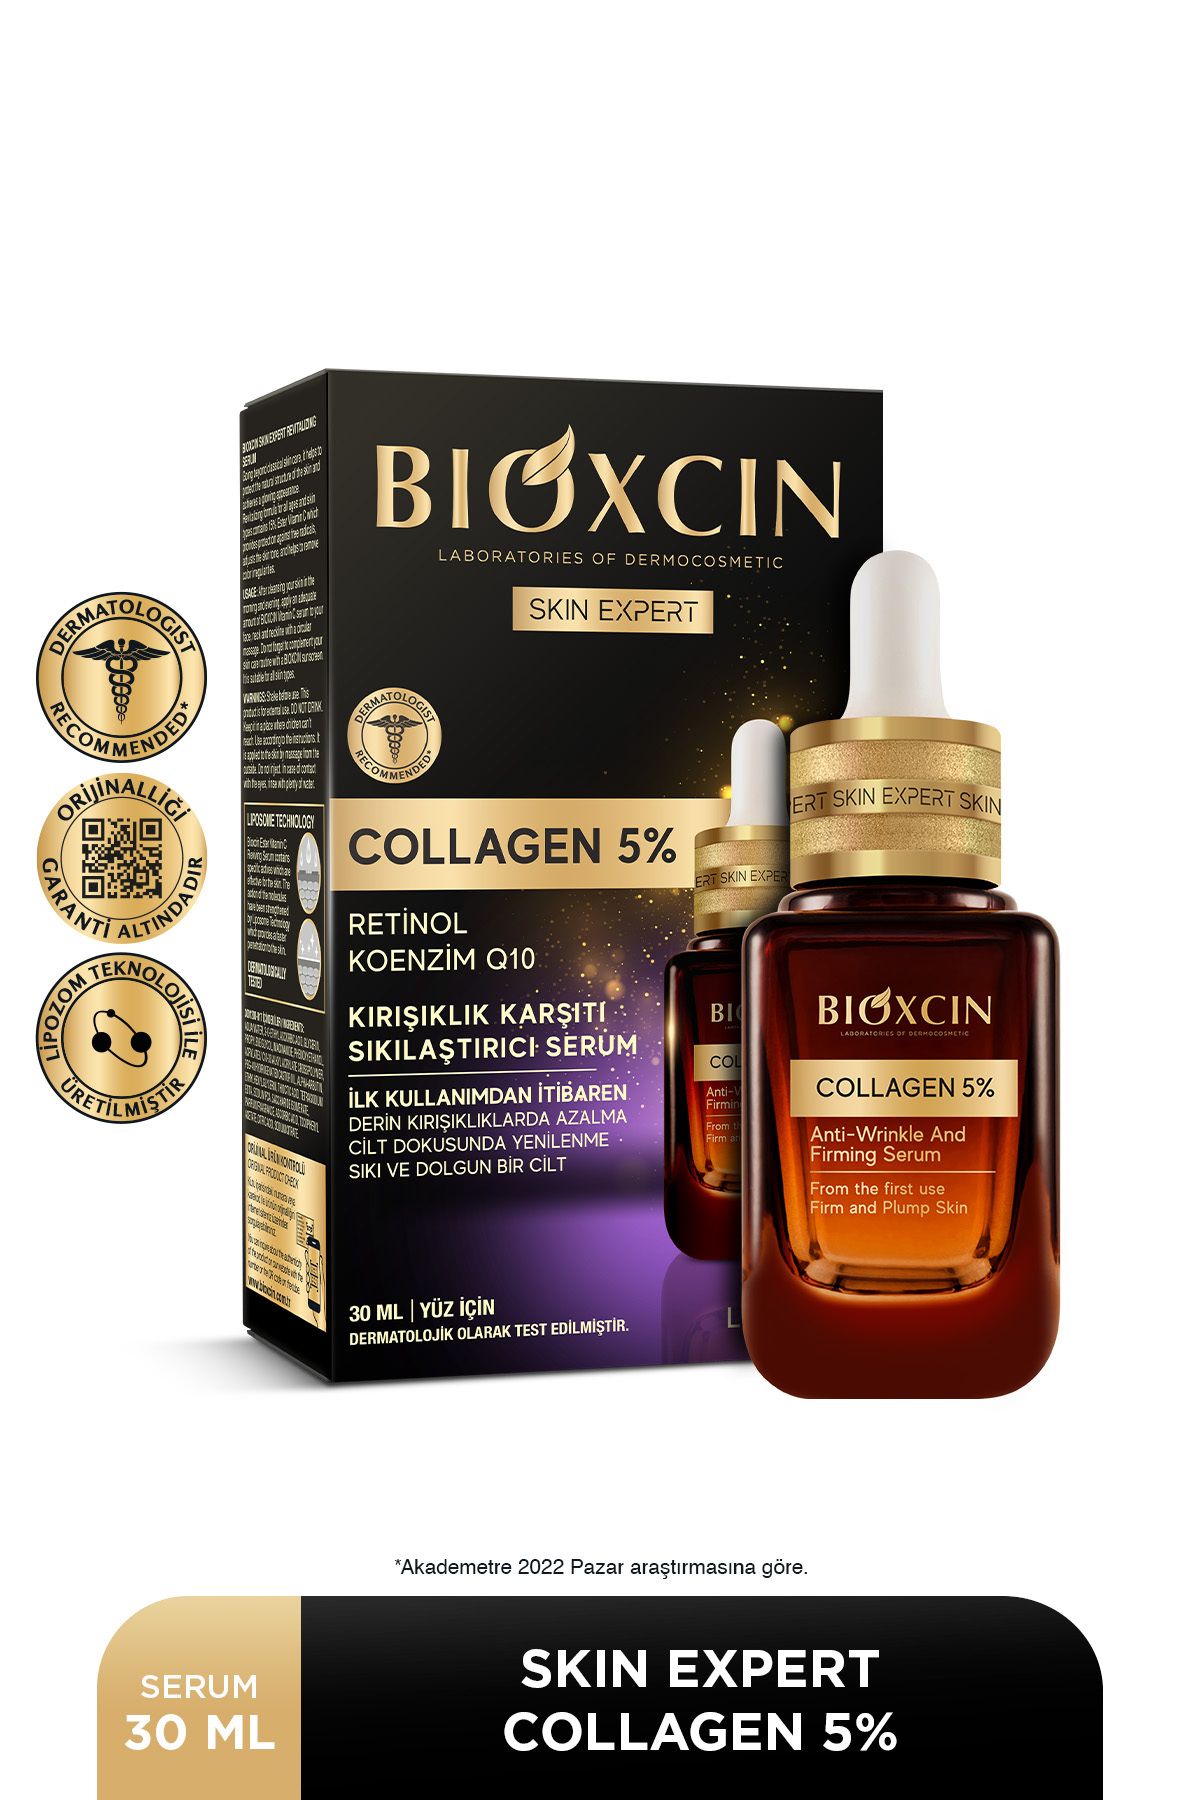 Bioxcin Skin Expert Collagen 5% Kırışıklık Karşıtı Sıkılaştırıcı Serum 30 ml Kolajen Retinol Q10